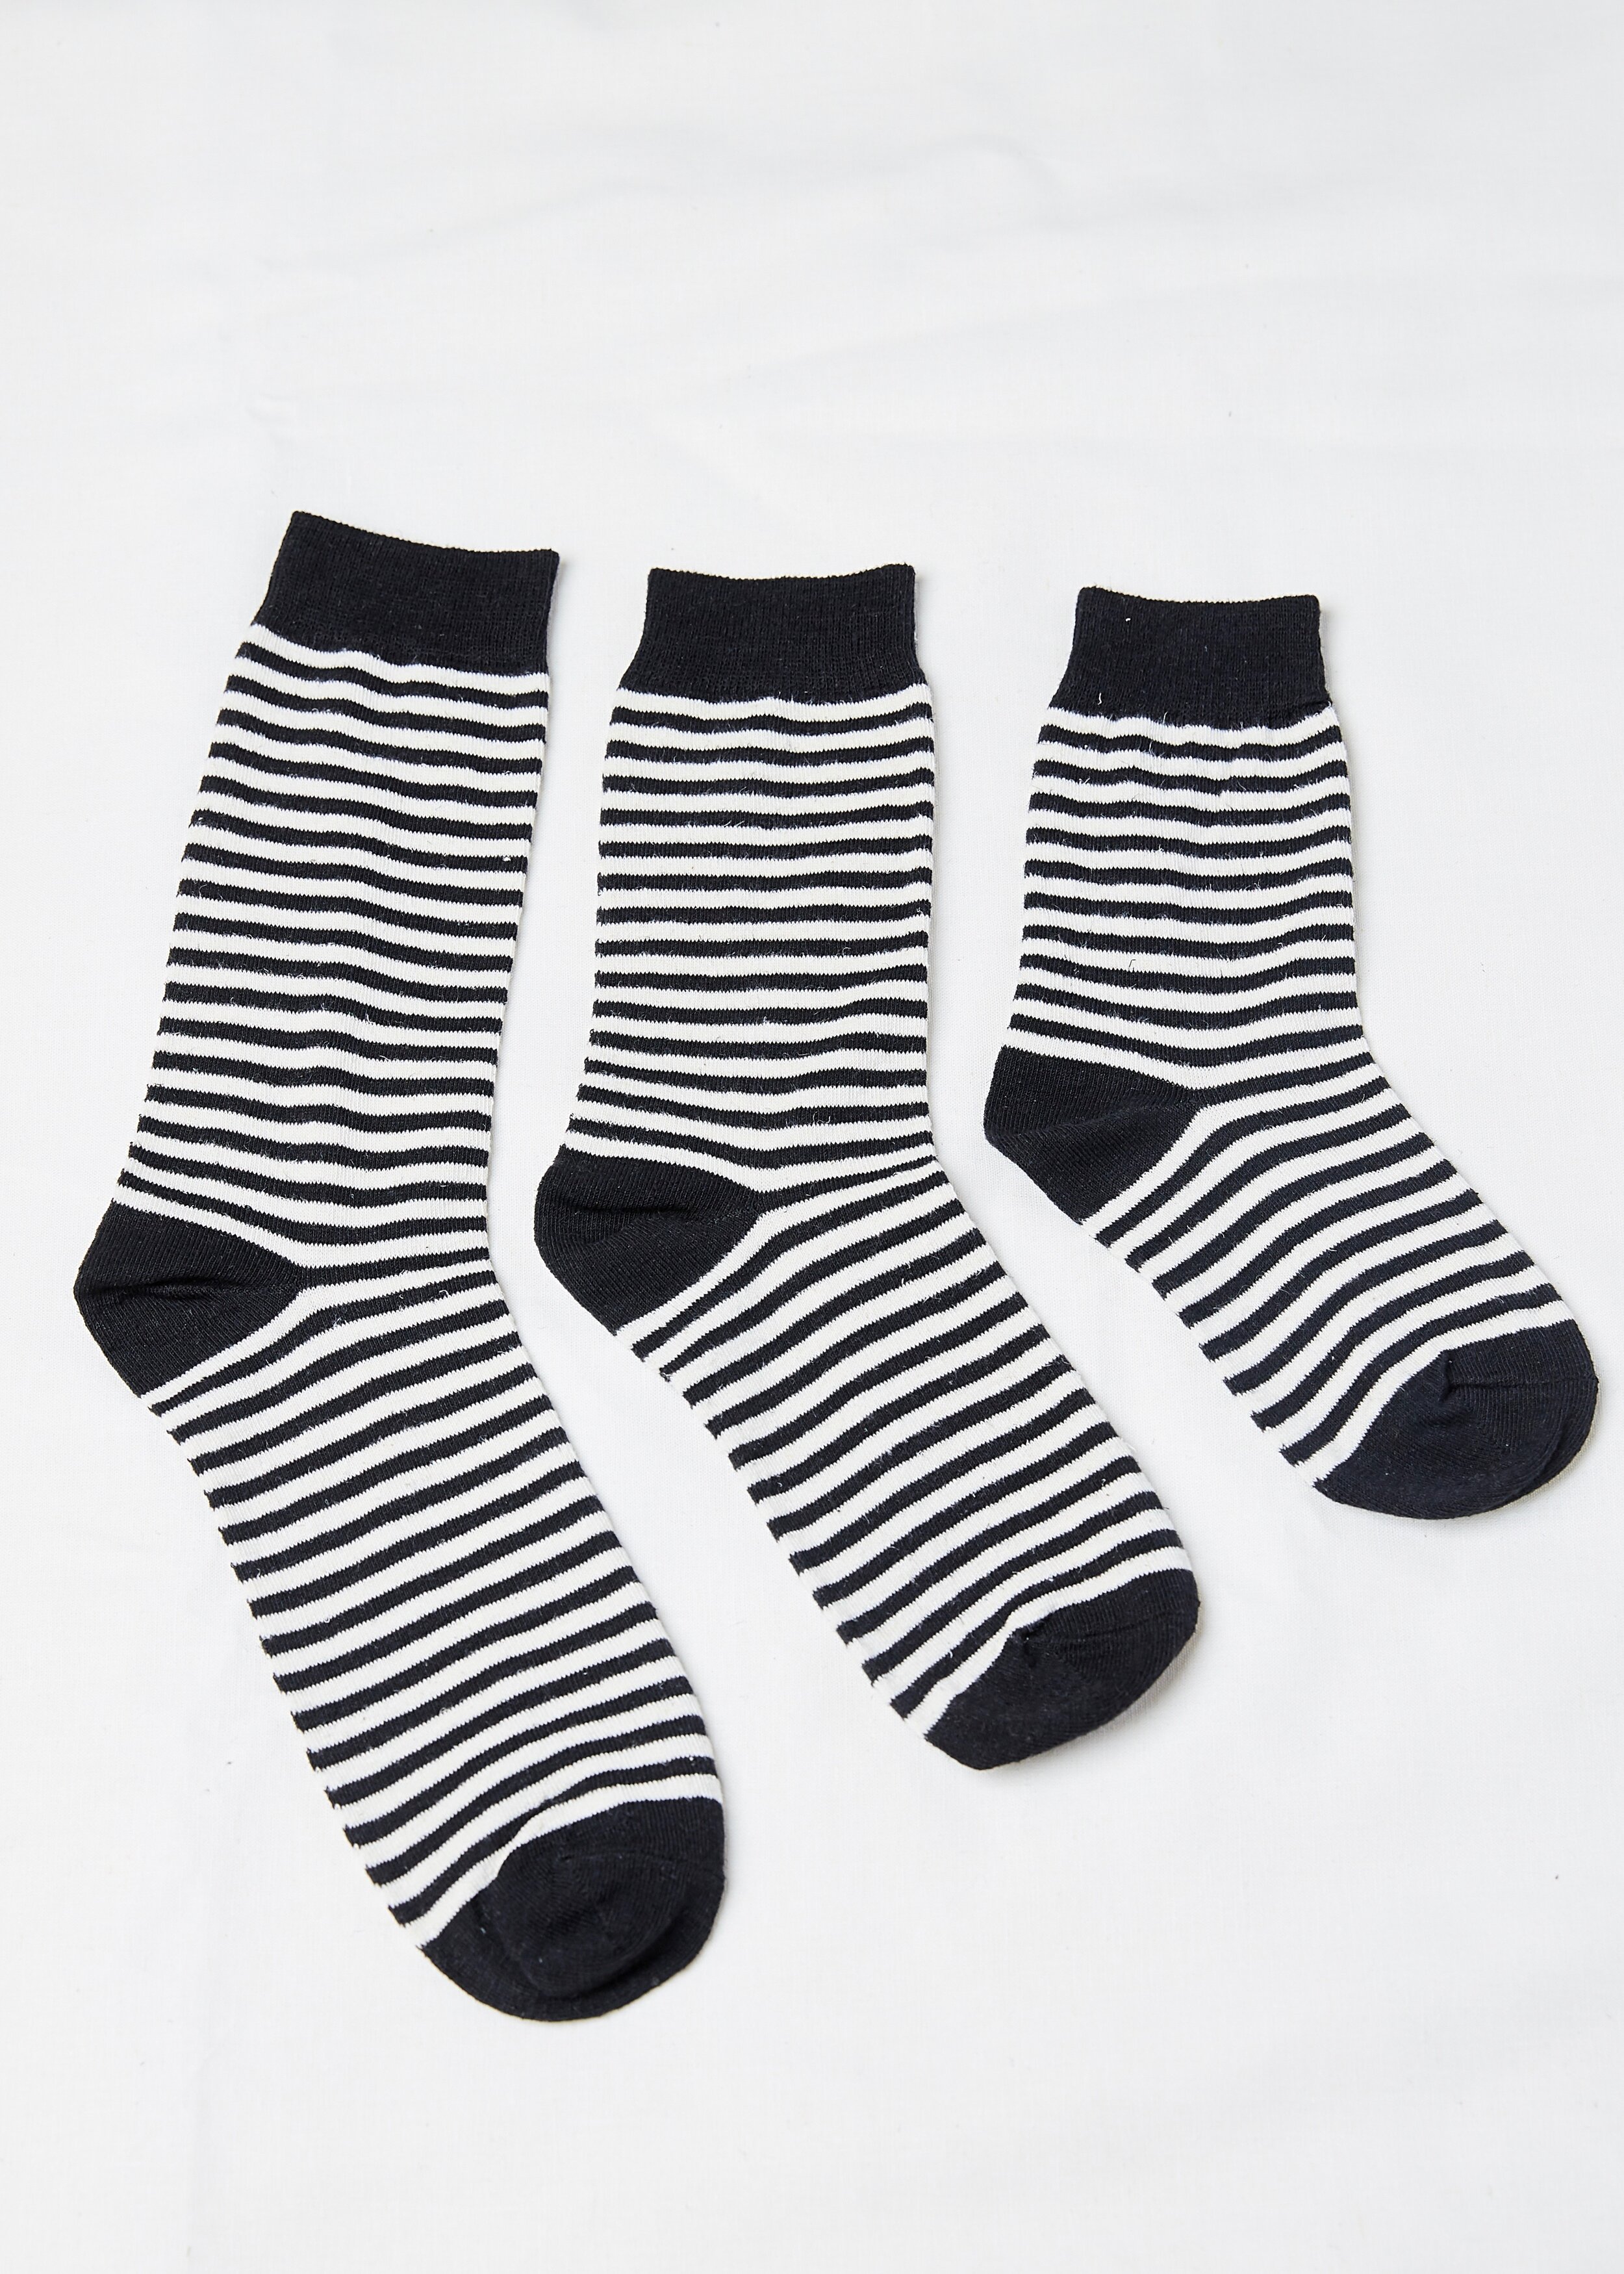 HEMP SOCKS – Black Stripes | Natural Socks & Sock Packs — Hemp Clothing ...